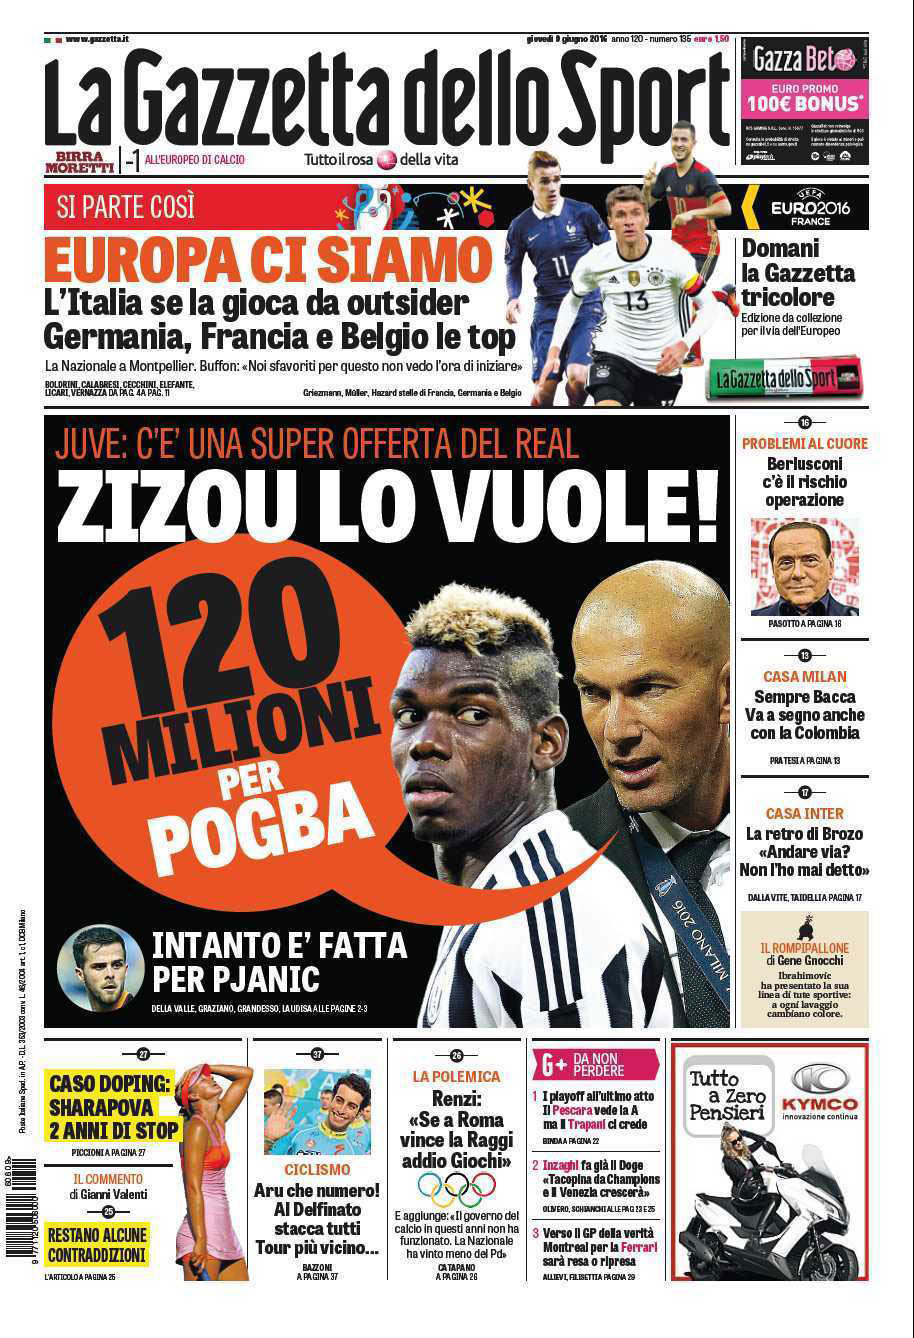 'La Gazzetta' asegura que el Real Madrid echará el resto por Pogba